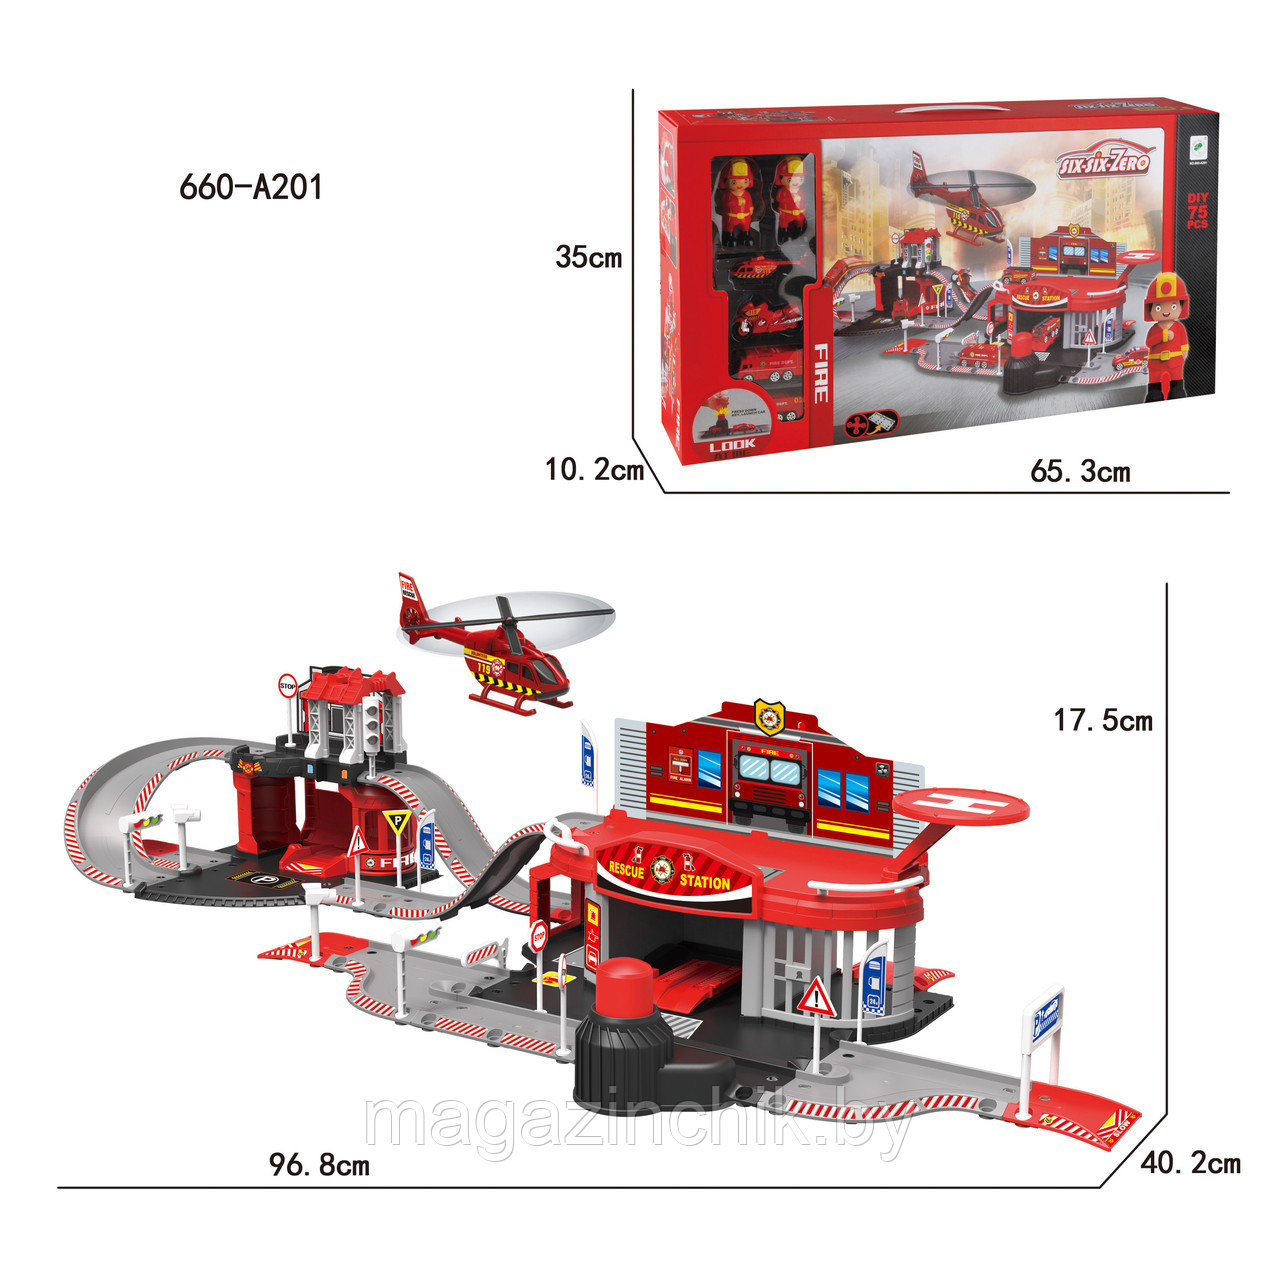 Детский игровой набор пожарных 660-A201